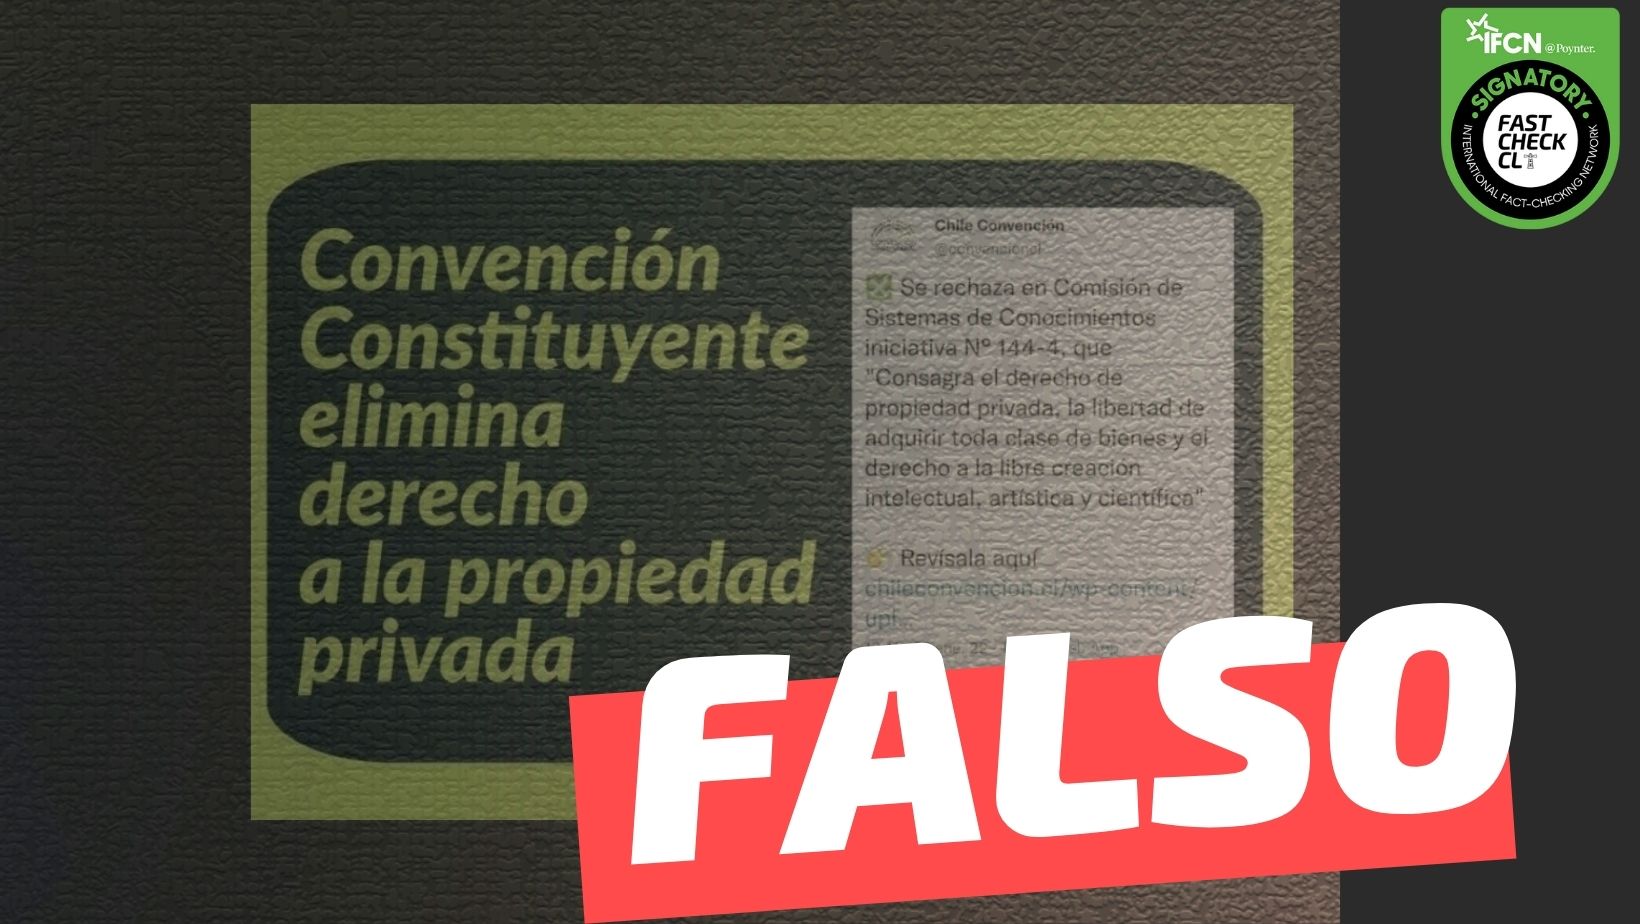 You are currently viewing “Convenci贸n Constituyente elimina derecho a la propiedad privada”: #Falso